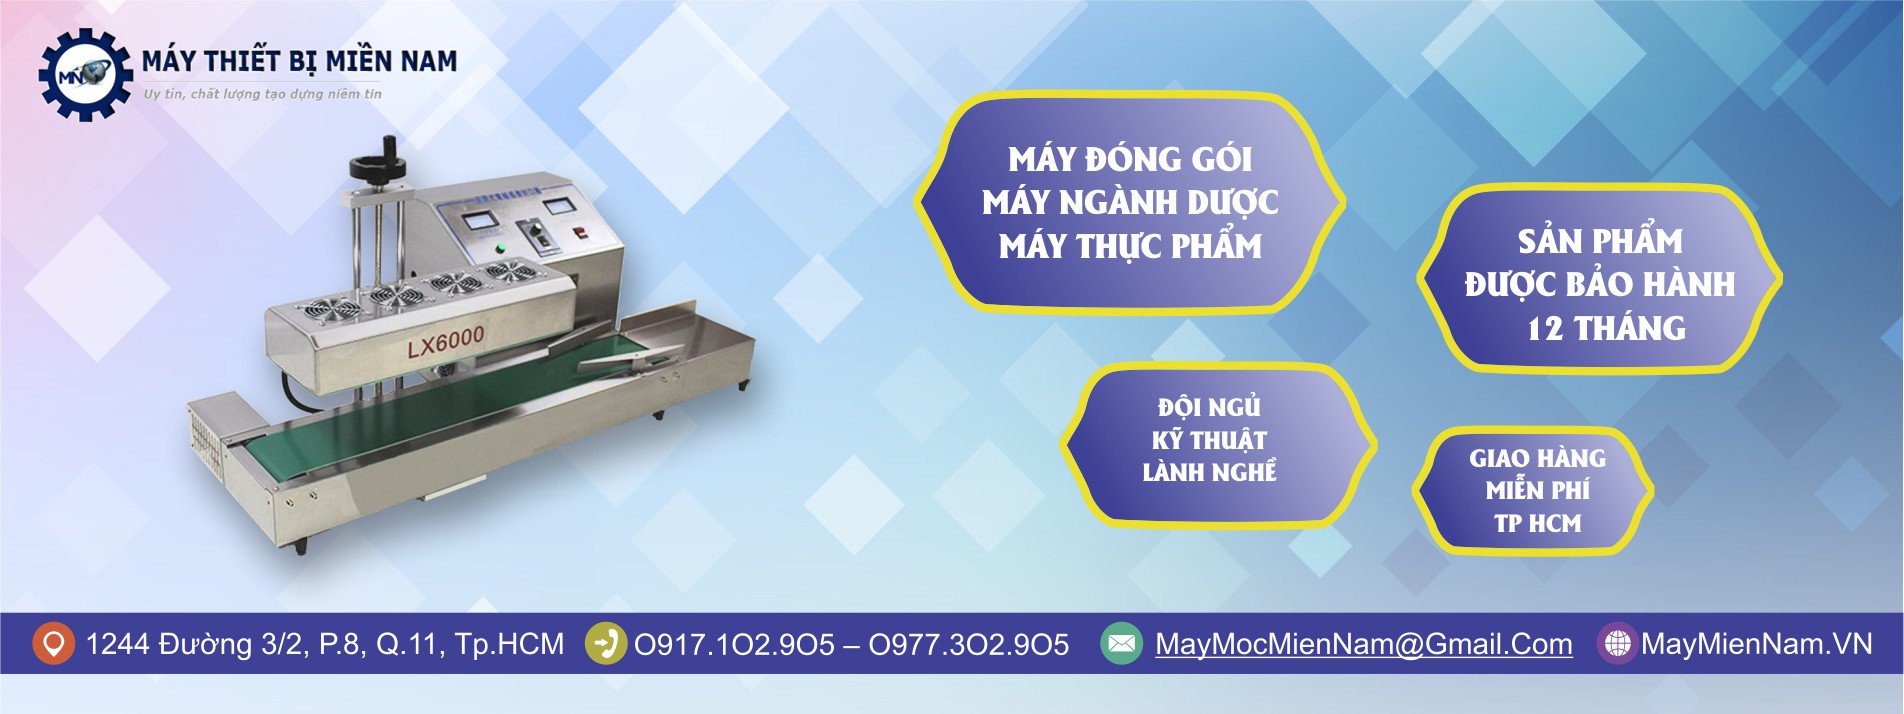 Máy Thiết Bị Miền Nam chuyên cung cấp máy móc thiết bị ngành dược TPHCM chất lượng